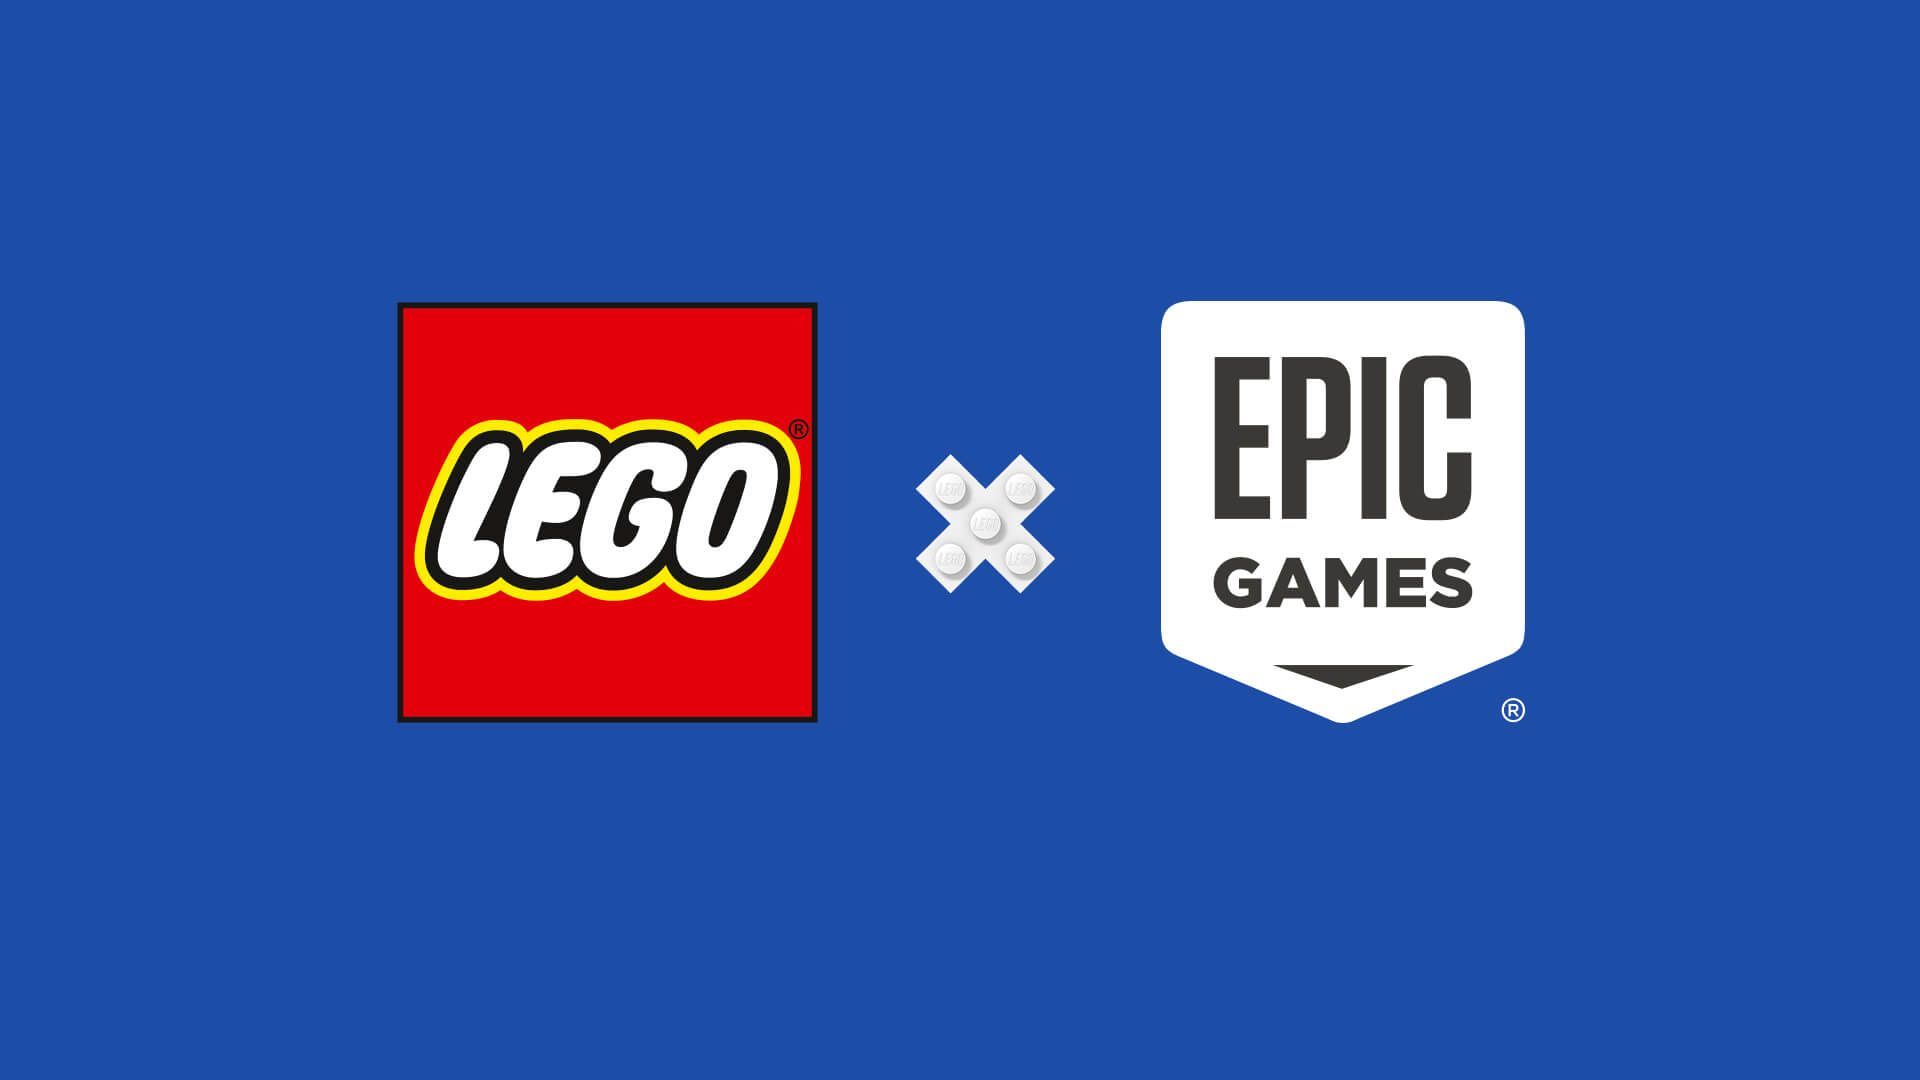 Epic Games s'associe au groupe LEGO afin de construire un métavers à destination des enfants